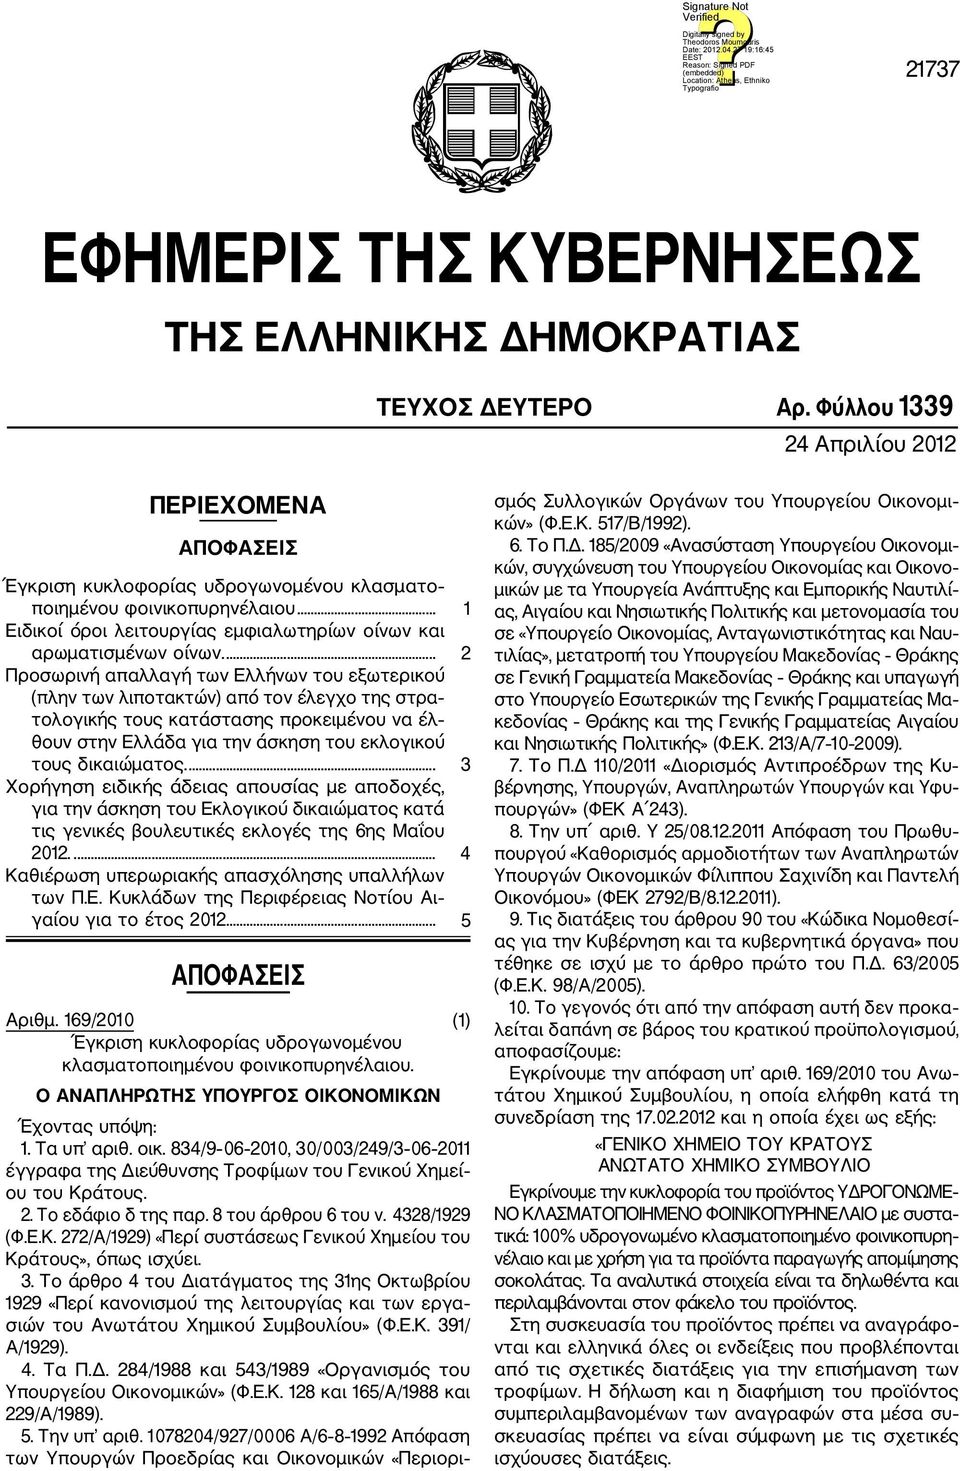 ... 2 Προσωρινή απαλλαγή των Ελλήνων του εξωτερικού (πλην των λιποτακτών) από τον έλεγχο της στρα τολογικής τους κατάστασης προκειμένου να έλ θουν στην Ελλάδα για την άσκηση του εκλογικού τους